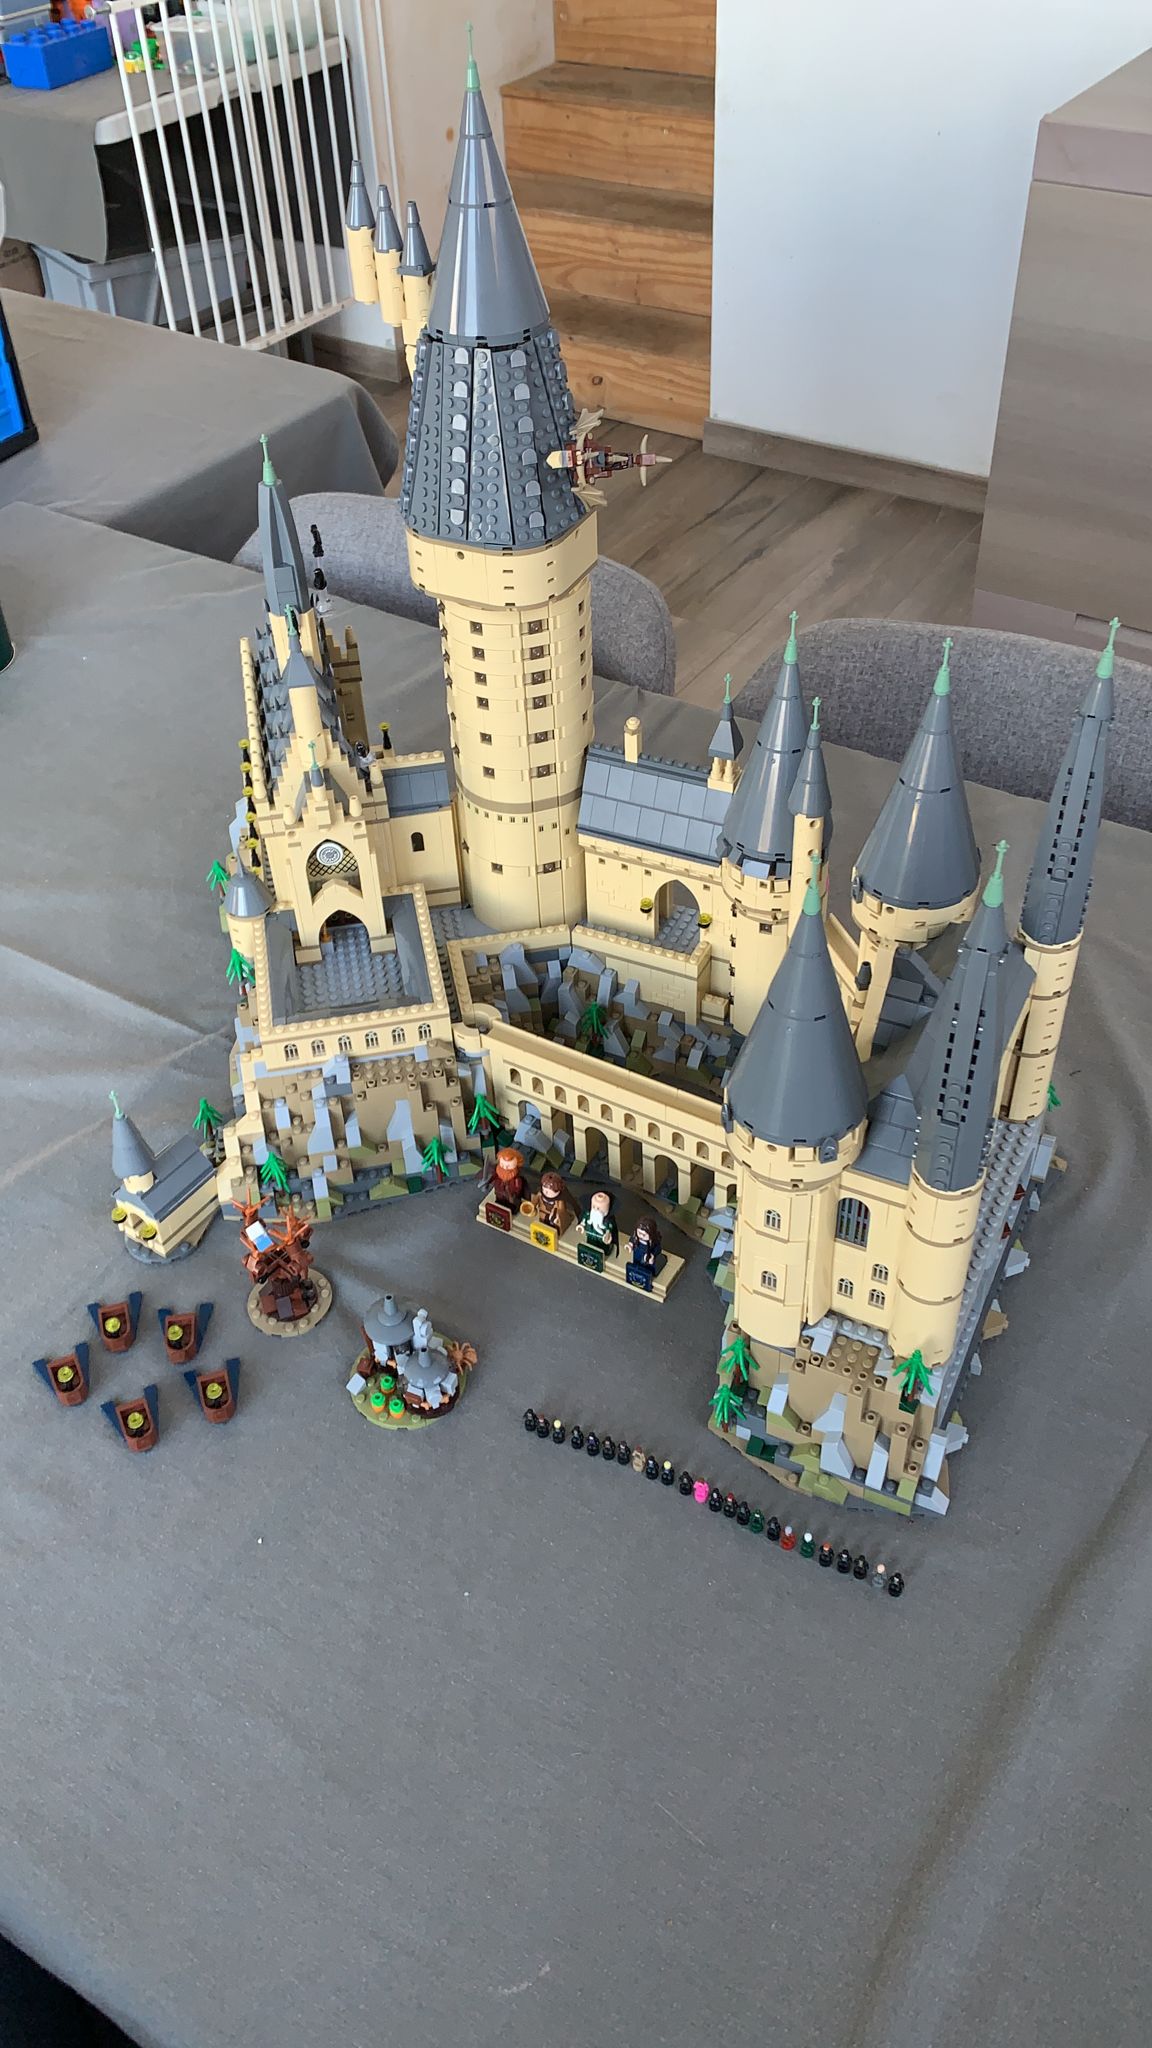 Ce set Lego Harry Potter Château de Poudlard est parfait à offrir